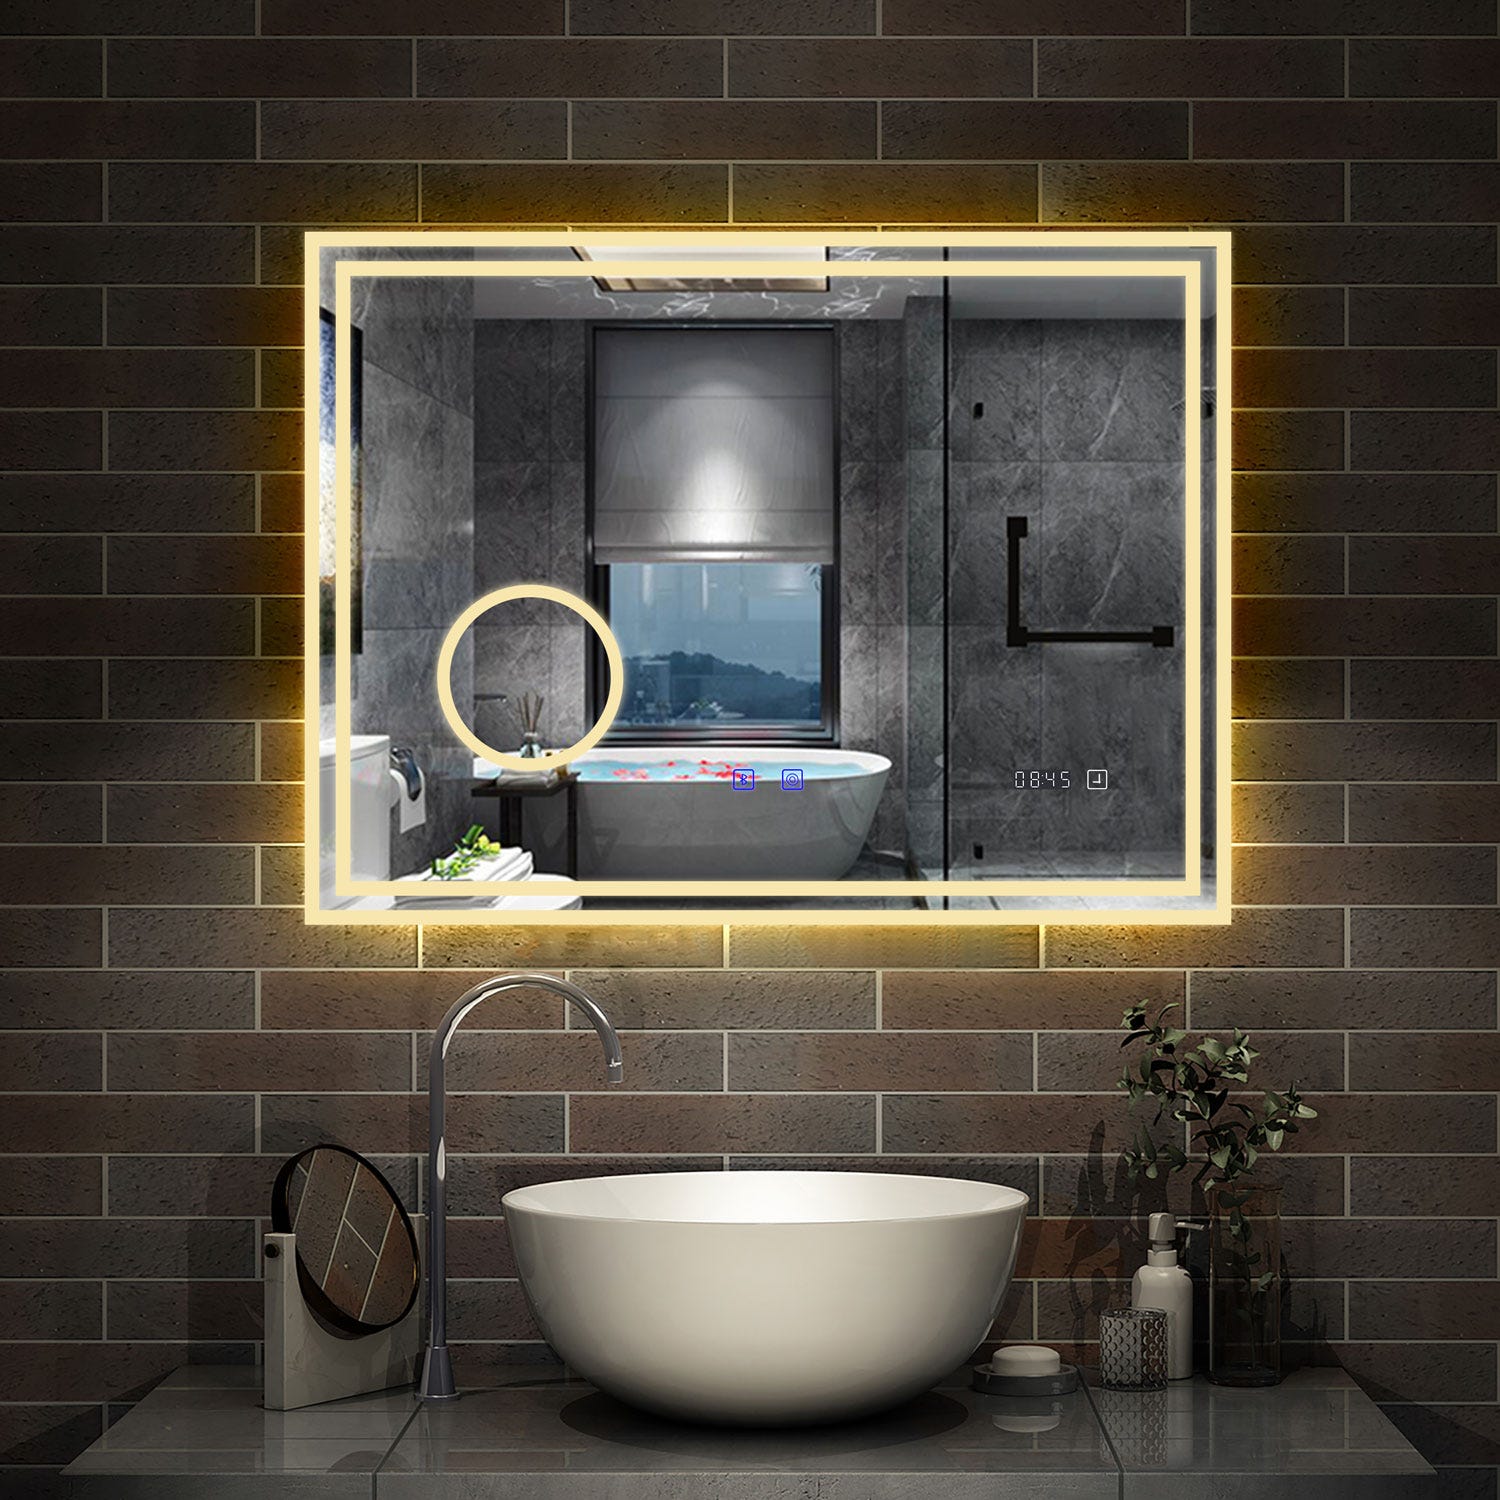 AICA LED miroir 80x60cm horloge + bluetooth + miroir grossissant + tricolore + tactile + anti-buée, suspendu horizontalement ,miroir salle de bain 4